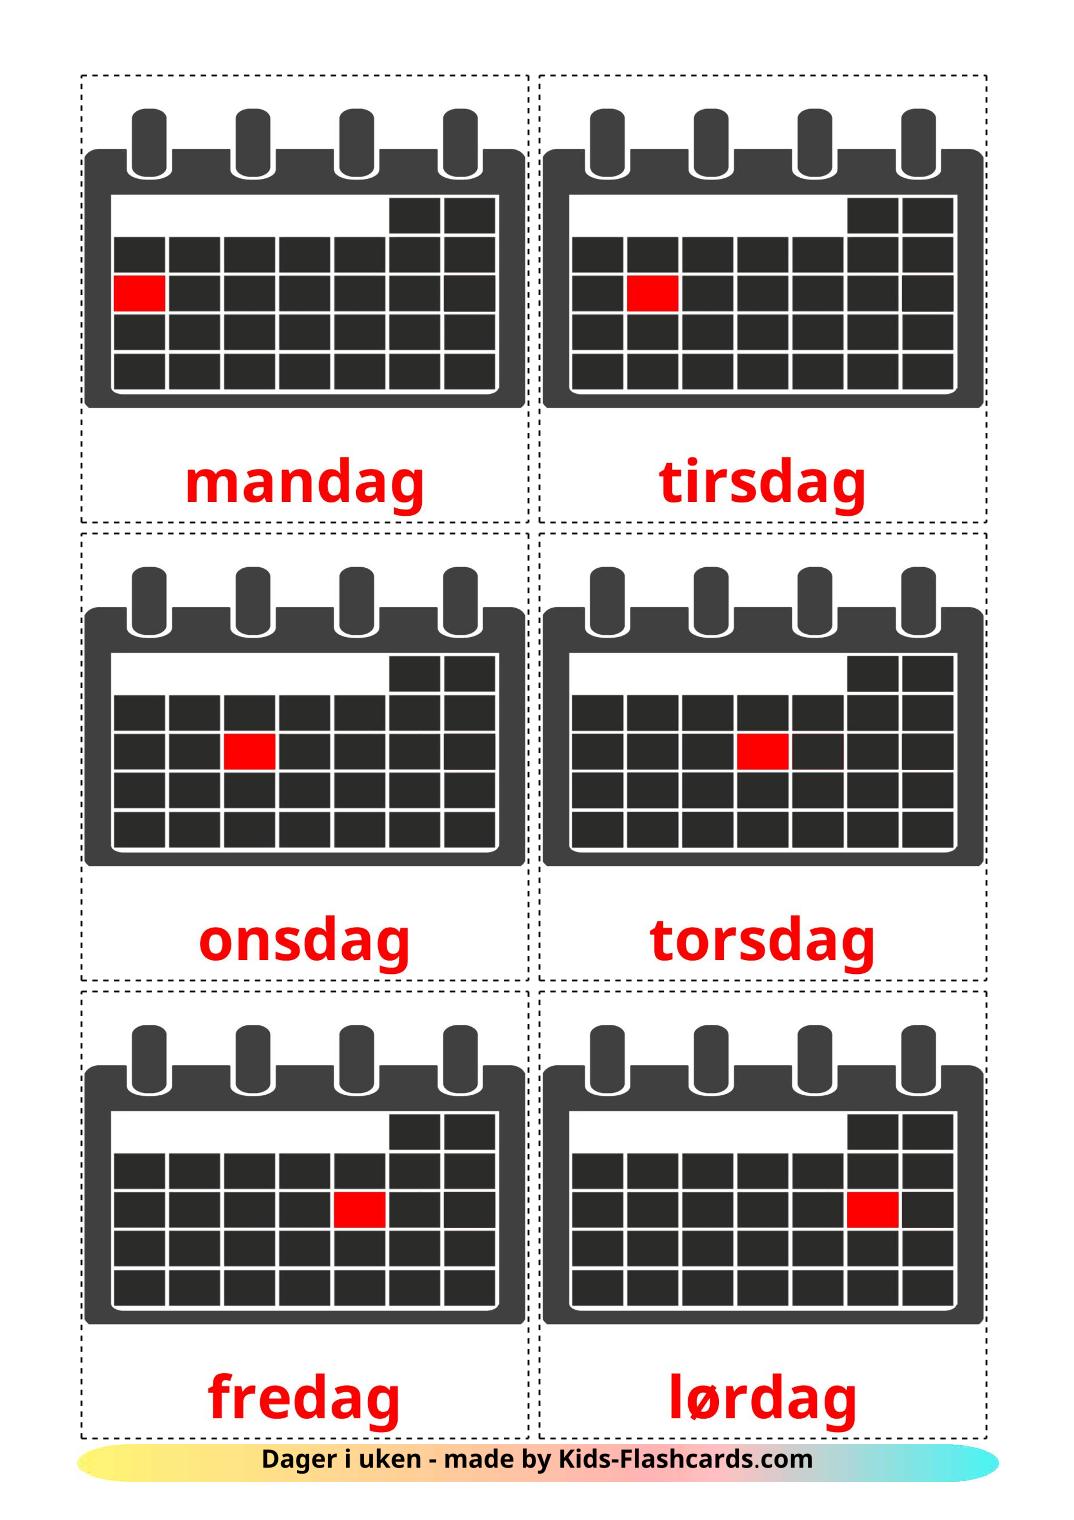 Días de la semana - 12 fichas de noruego para imprimir gratis 